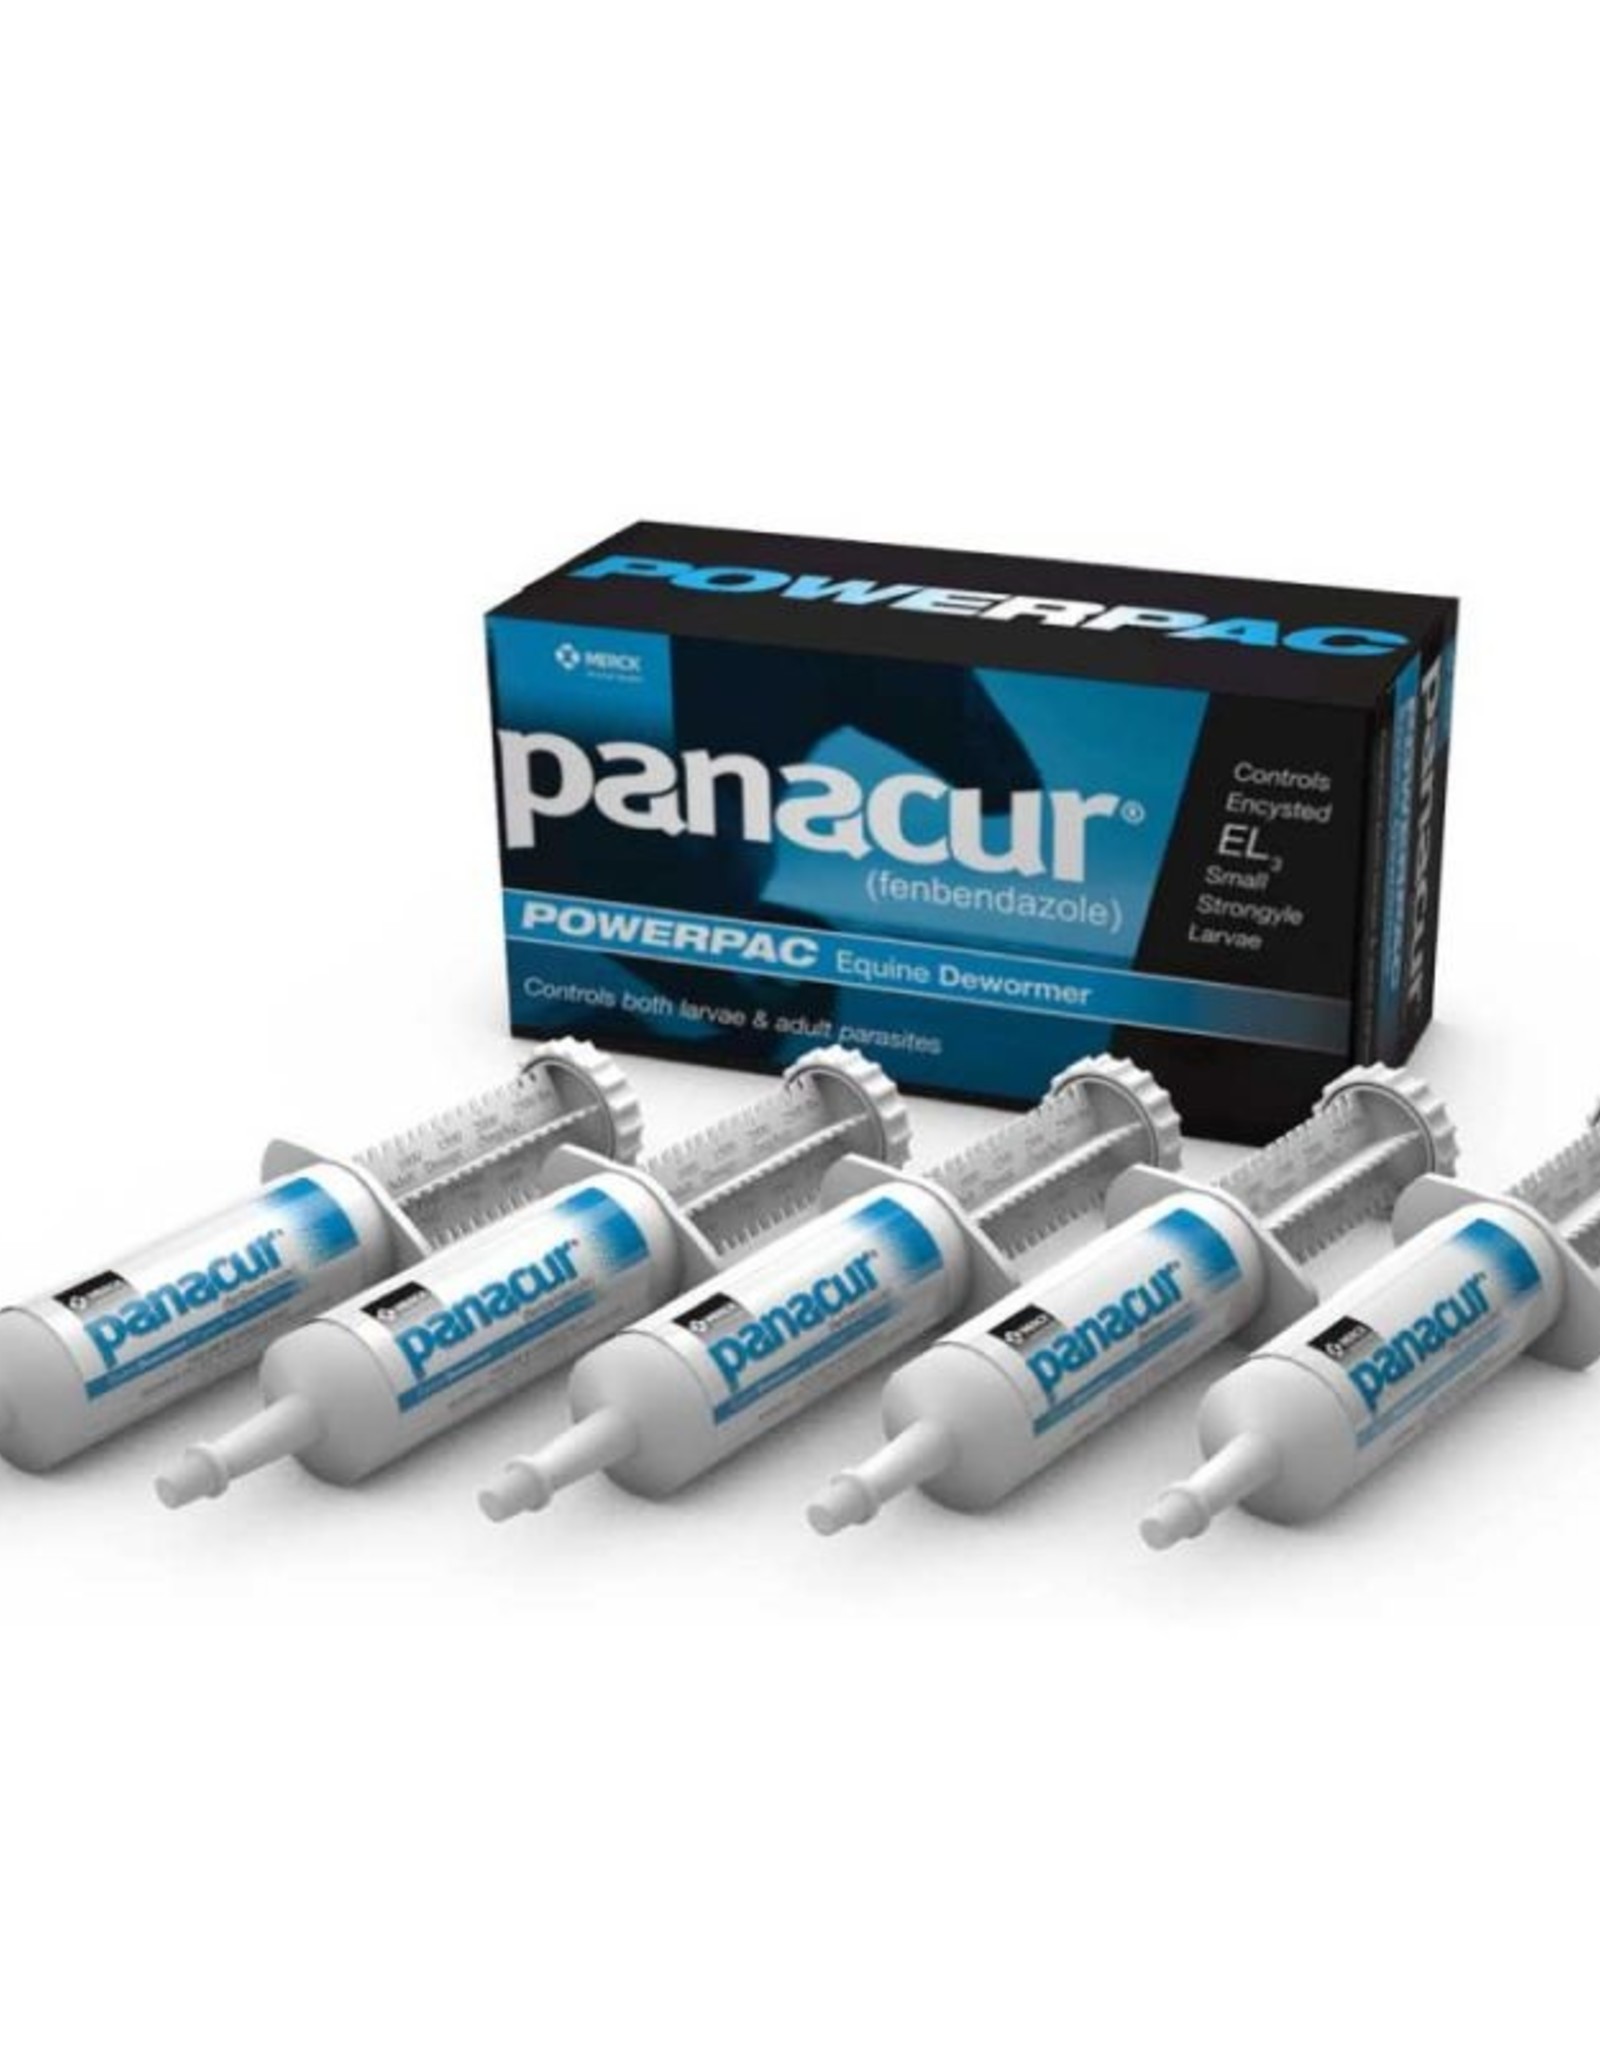 Merck Panacur Powerpac Dewormer